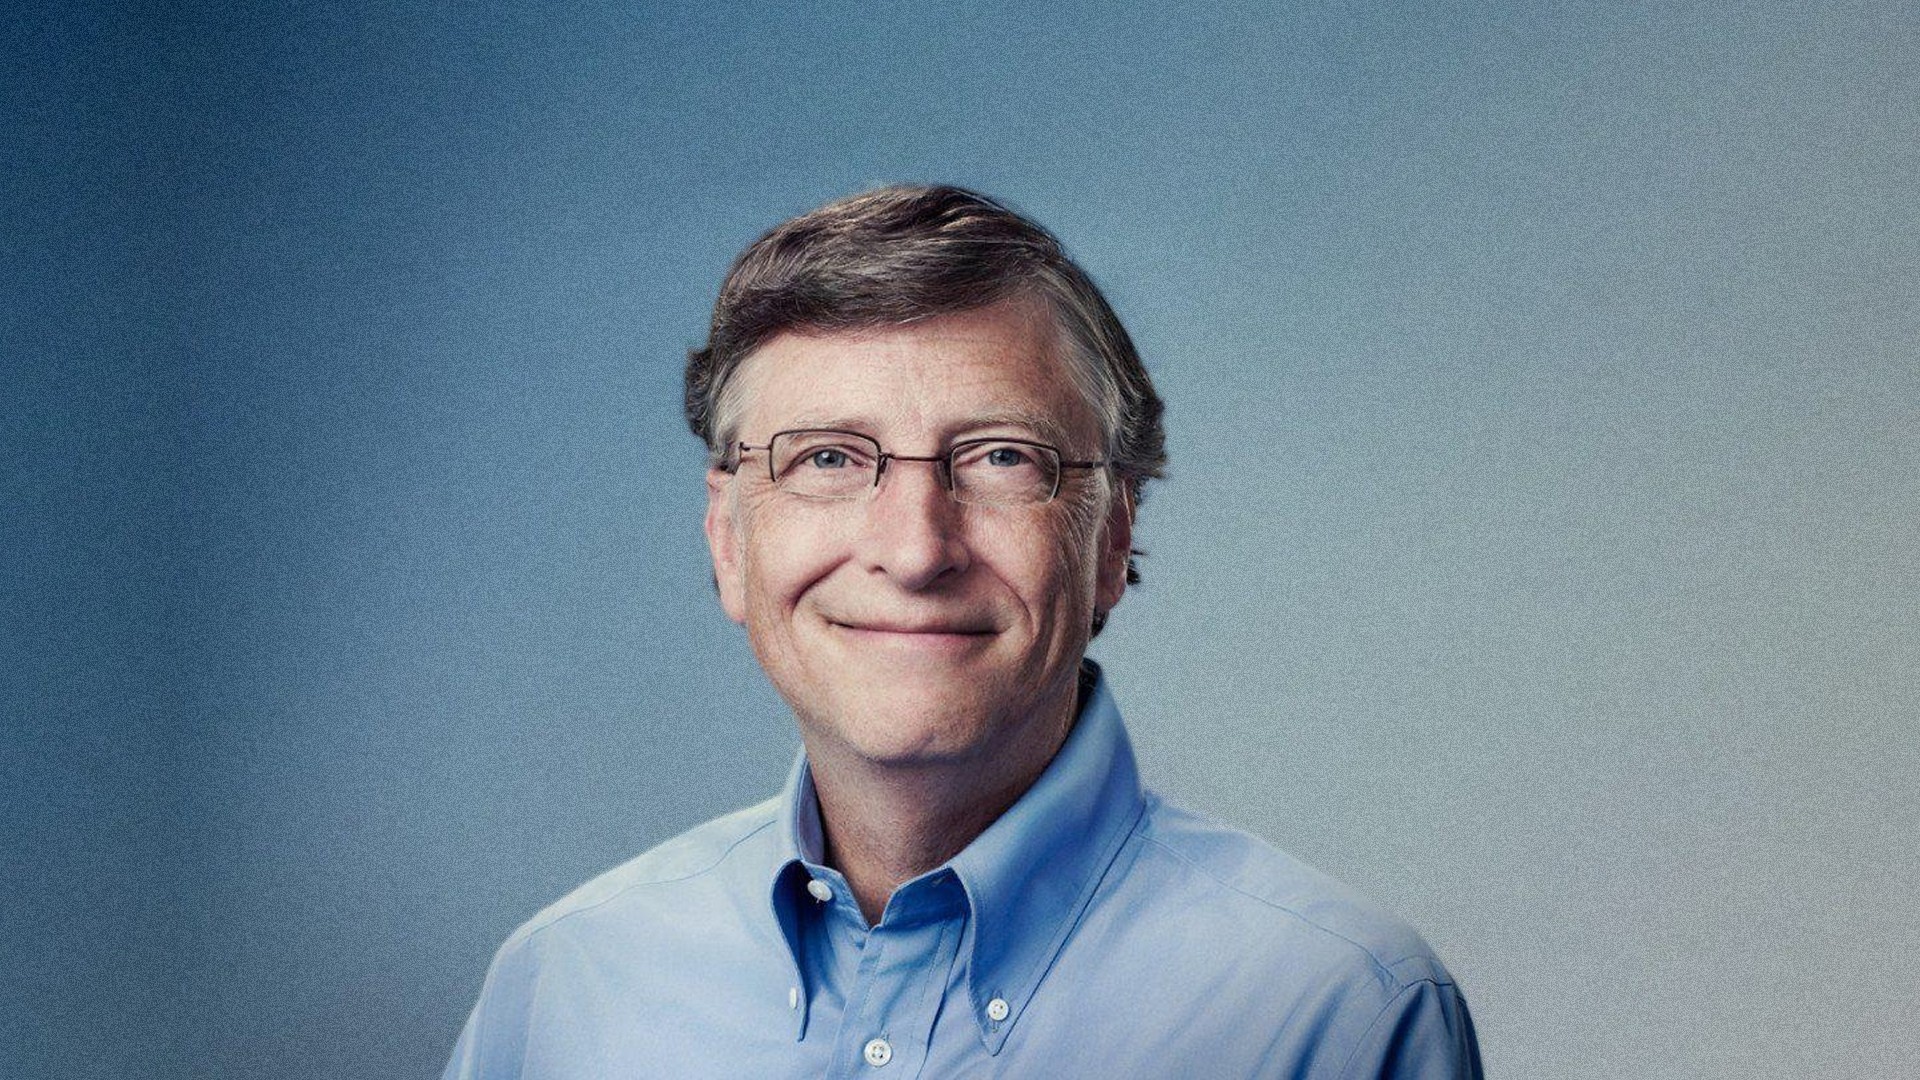 Bill Gates dispensa a corrida espacial para focar na erradicao da tuberculose; entenda